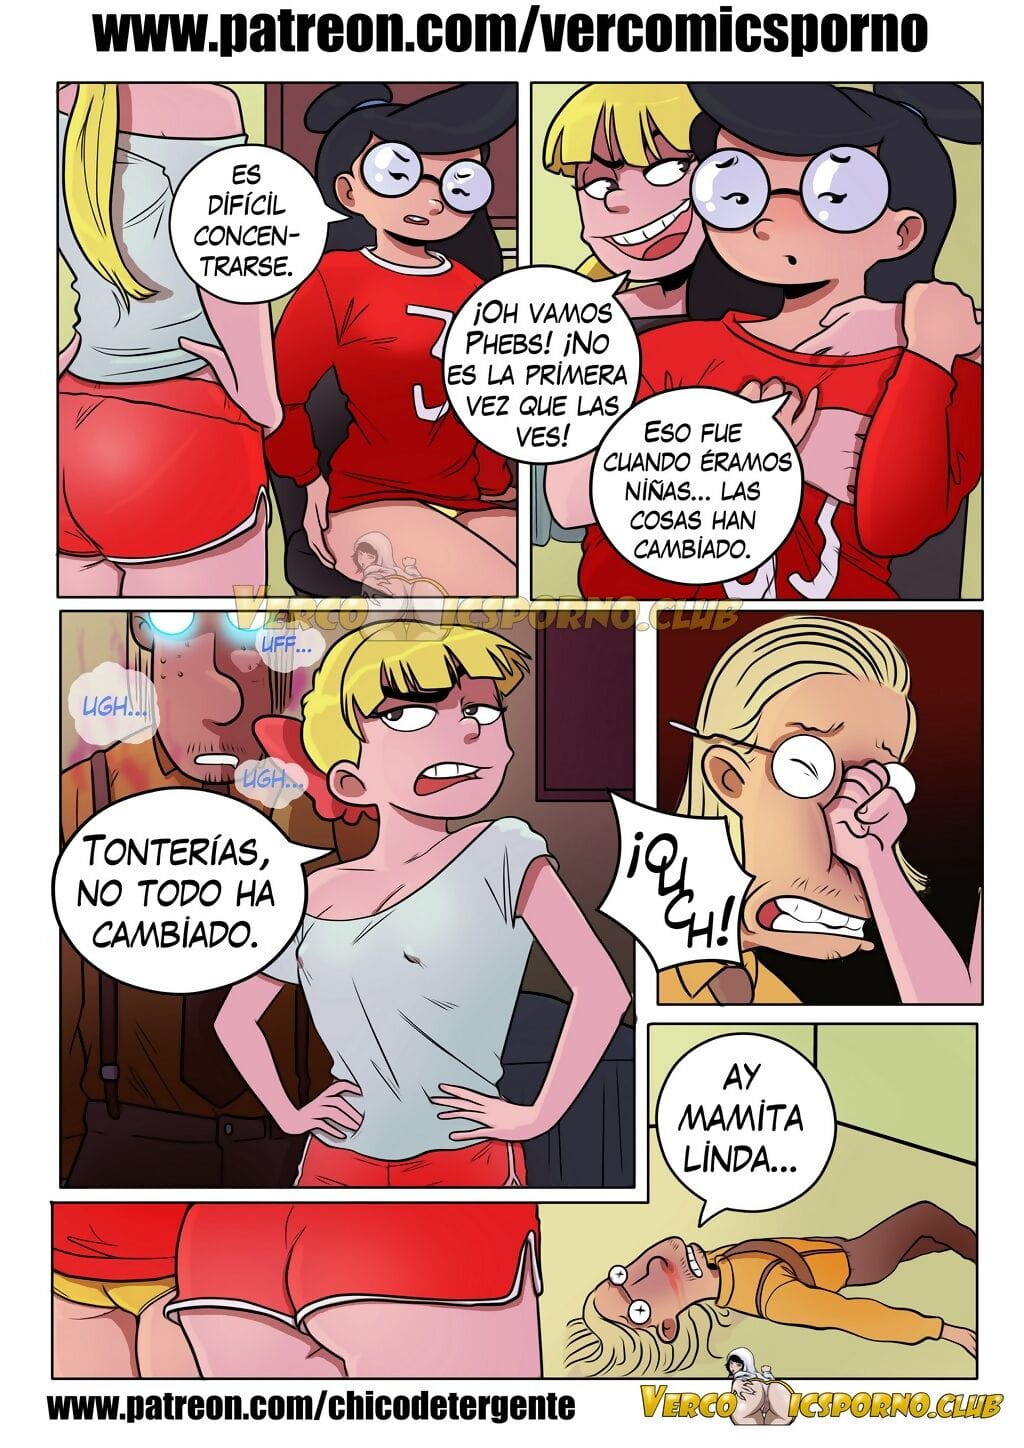 Hey Helga: Amor entre amigas - - - page 1